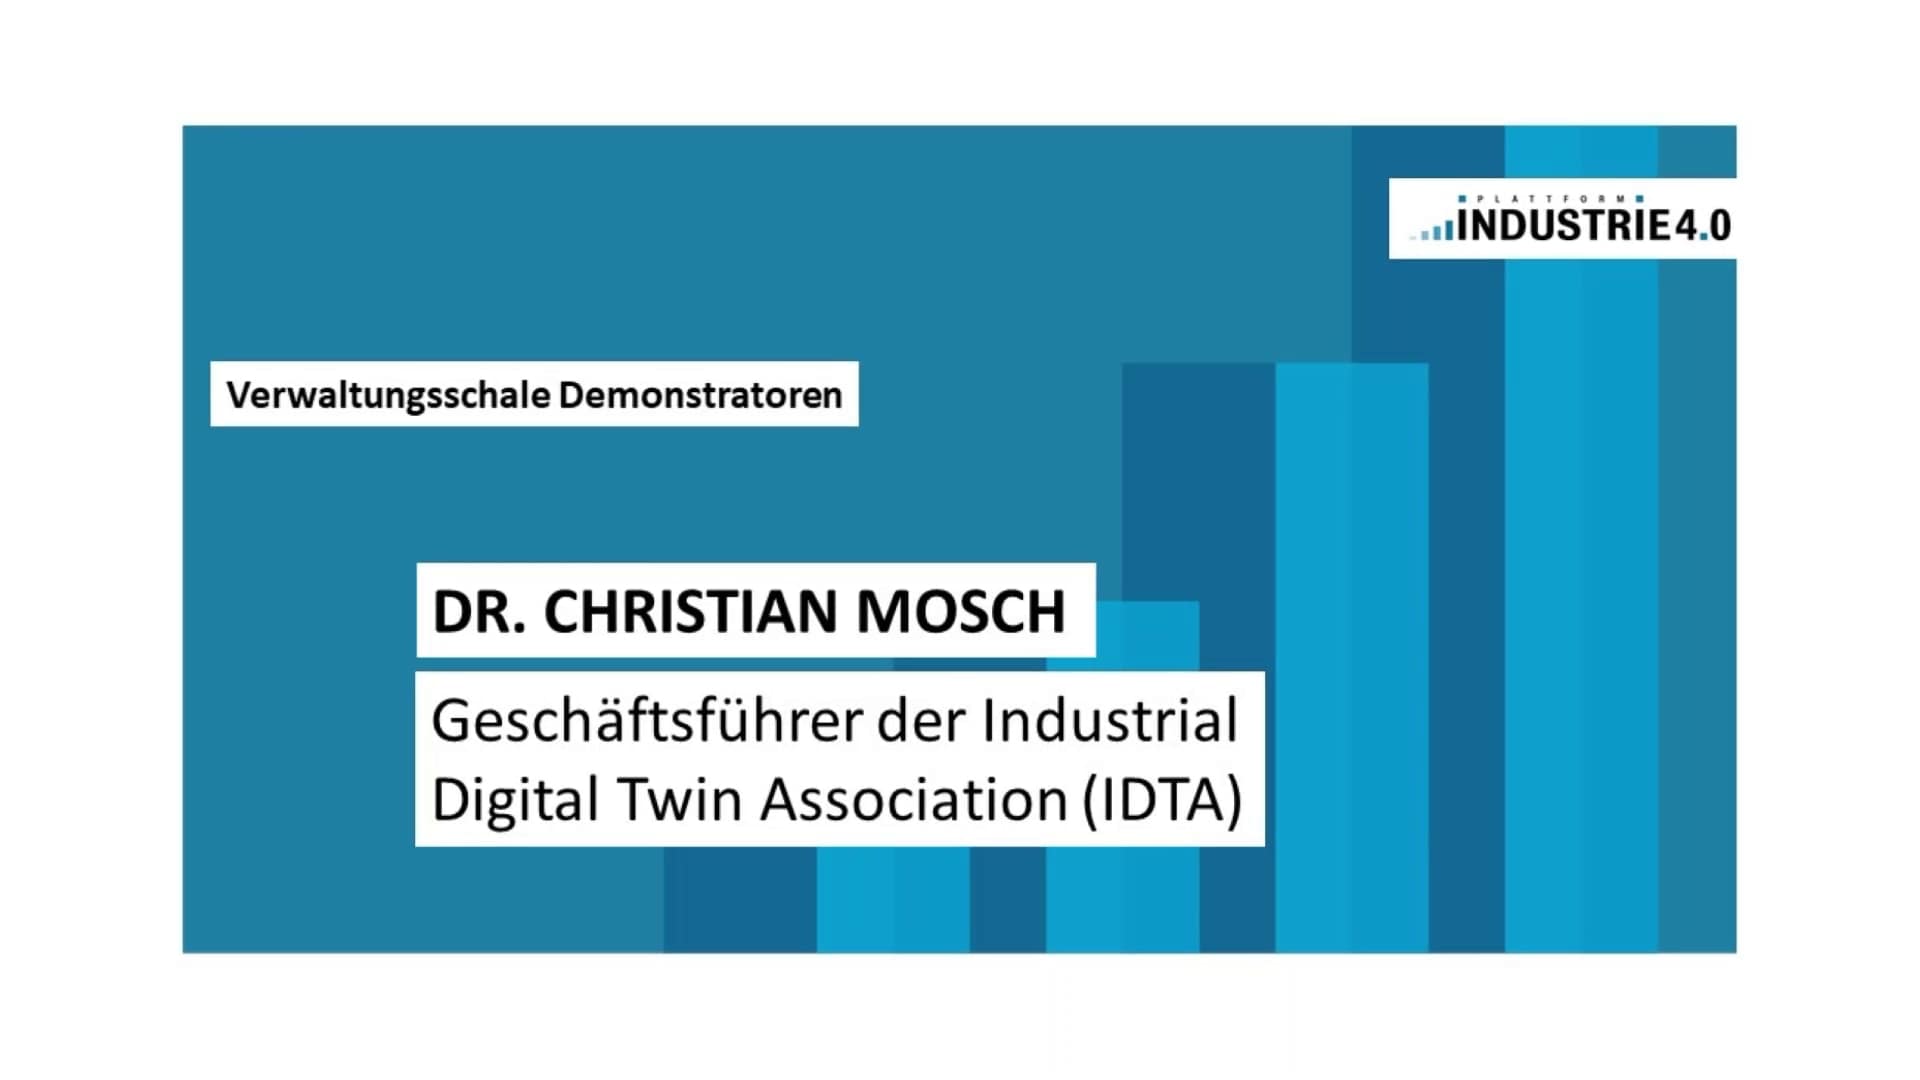 Dr. Christian Mosch, Geschäftsführer der Industrial Digital Twin Association (IDTA)​